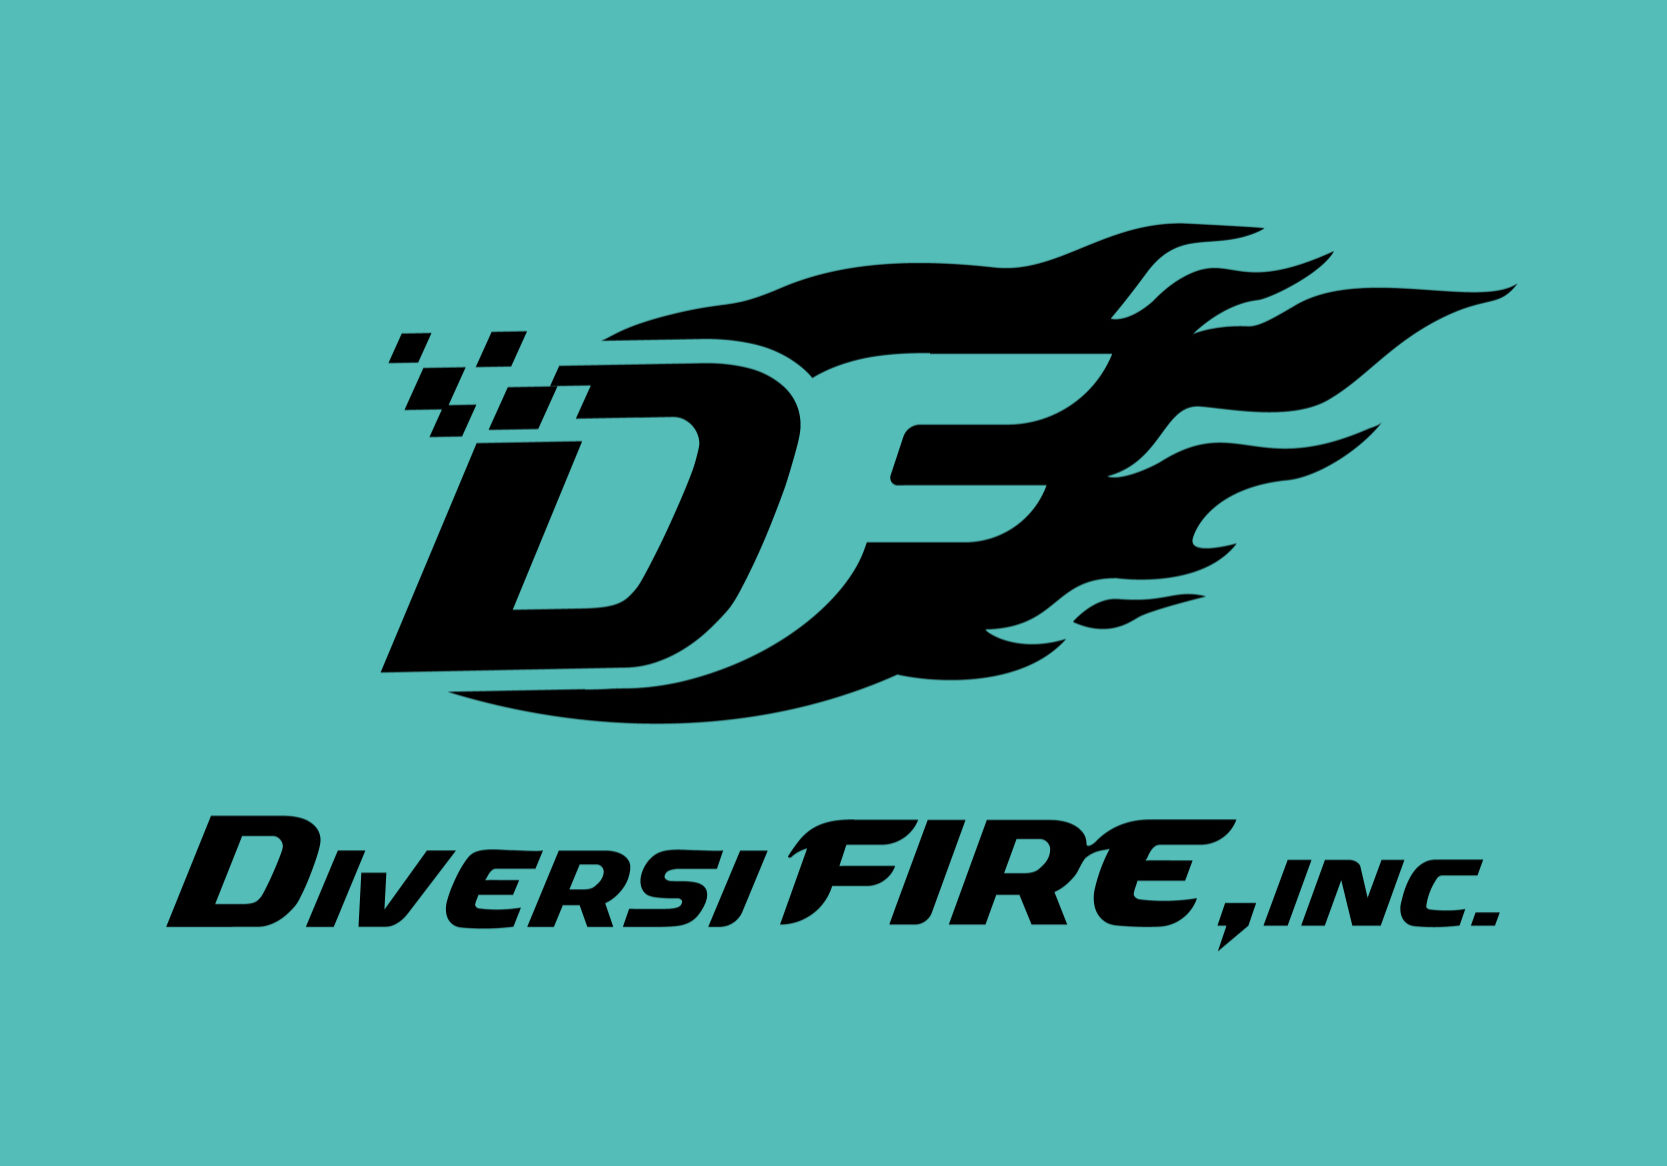 DiversiFIRE-logos-02